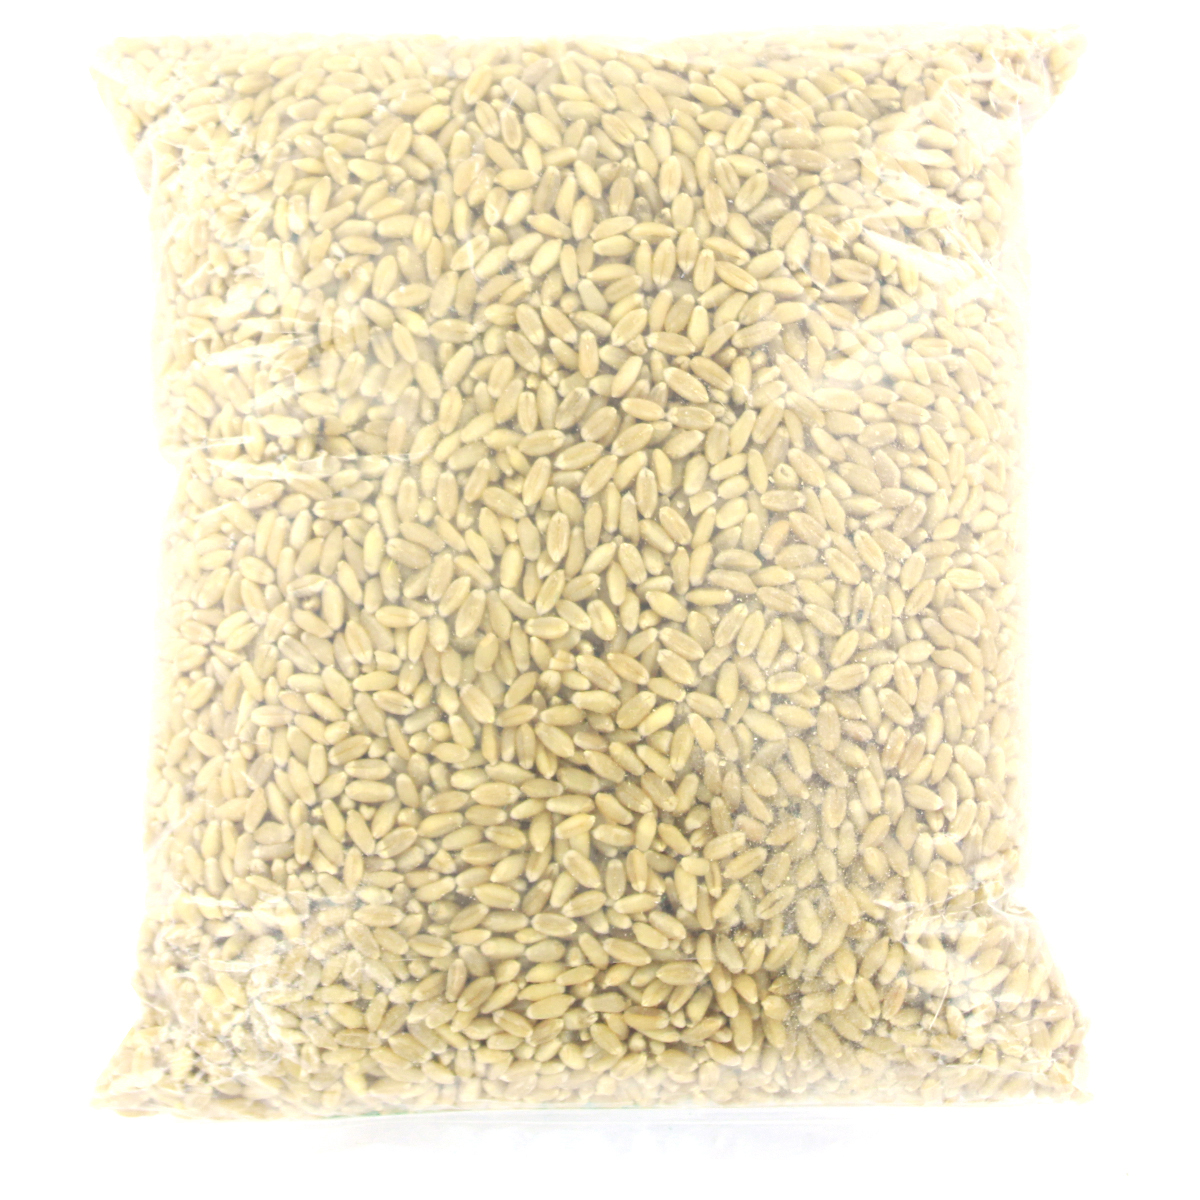 Samrudhi Whole Wheat 1kg